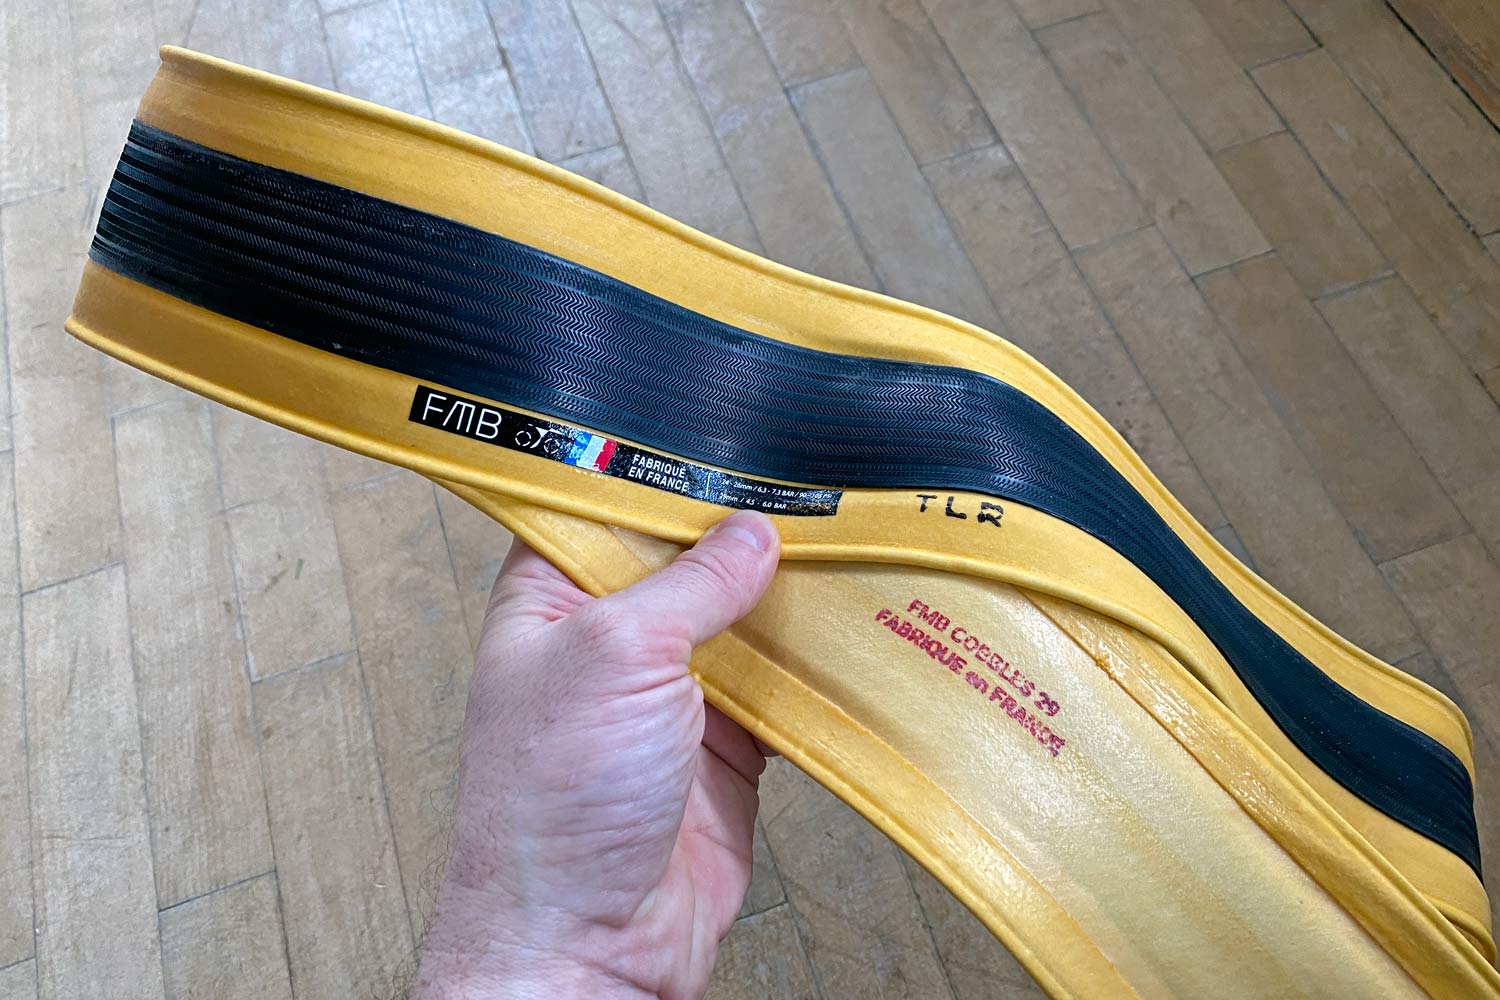 Copertone FMB Cobbles tubeless-ready TLR da 29 mm, pneumatico per bici da strada con copertoncino tubeless flessibile aperto fatto a mano in Francia